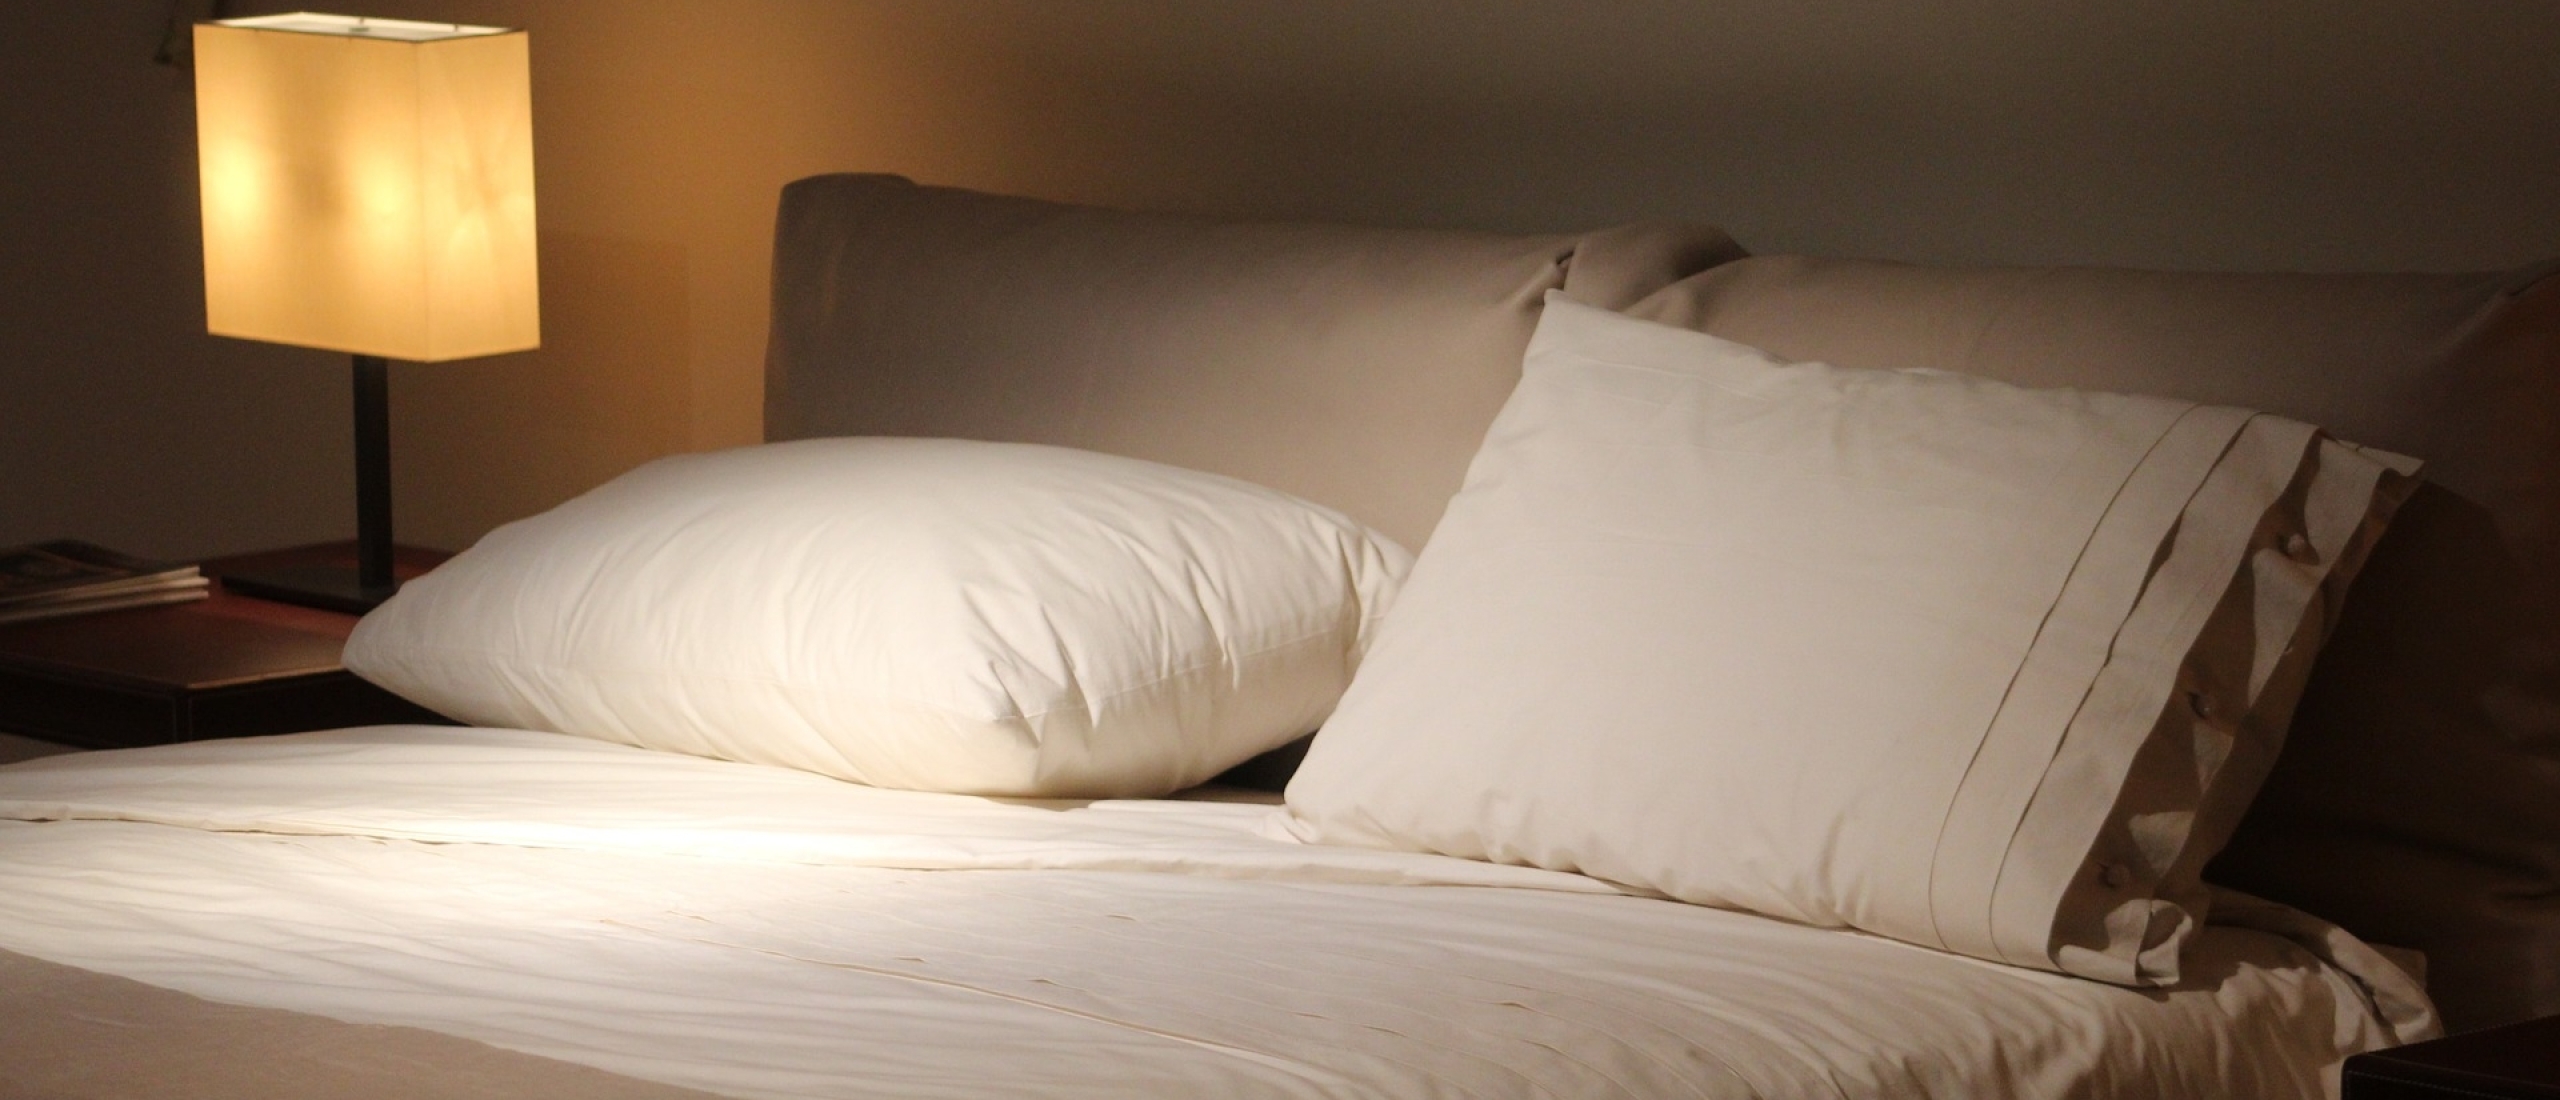 20 handige tips om beter te slapen | pas ze toe en zie het resultaat!